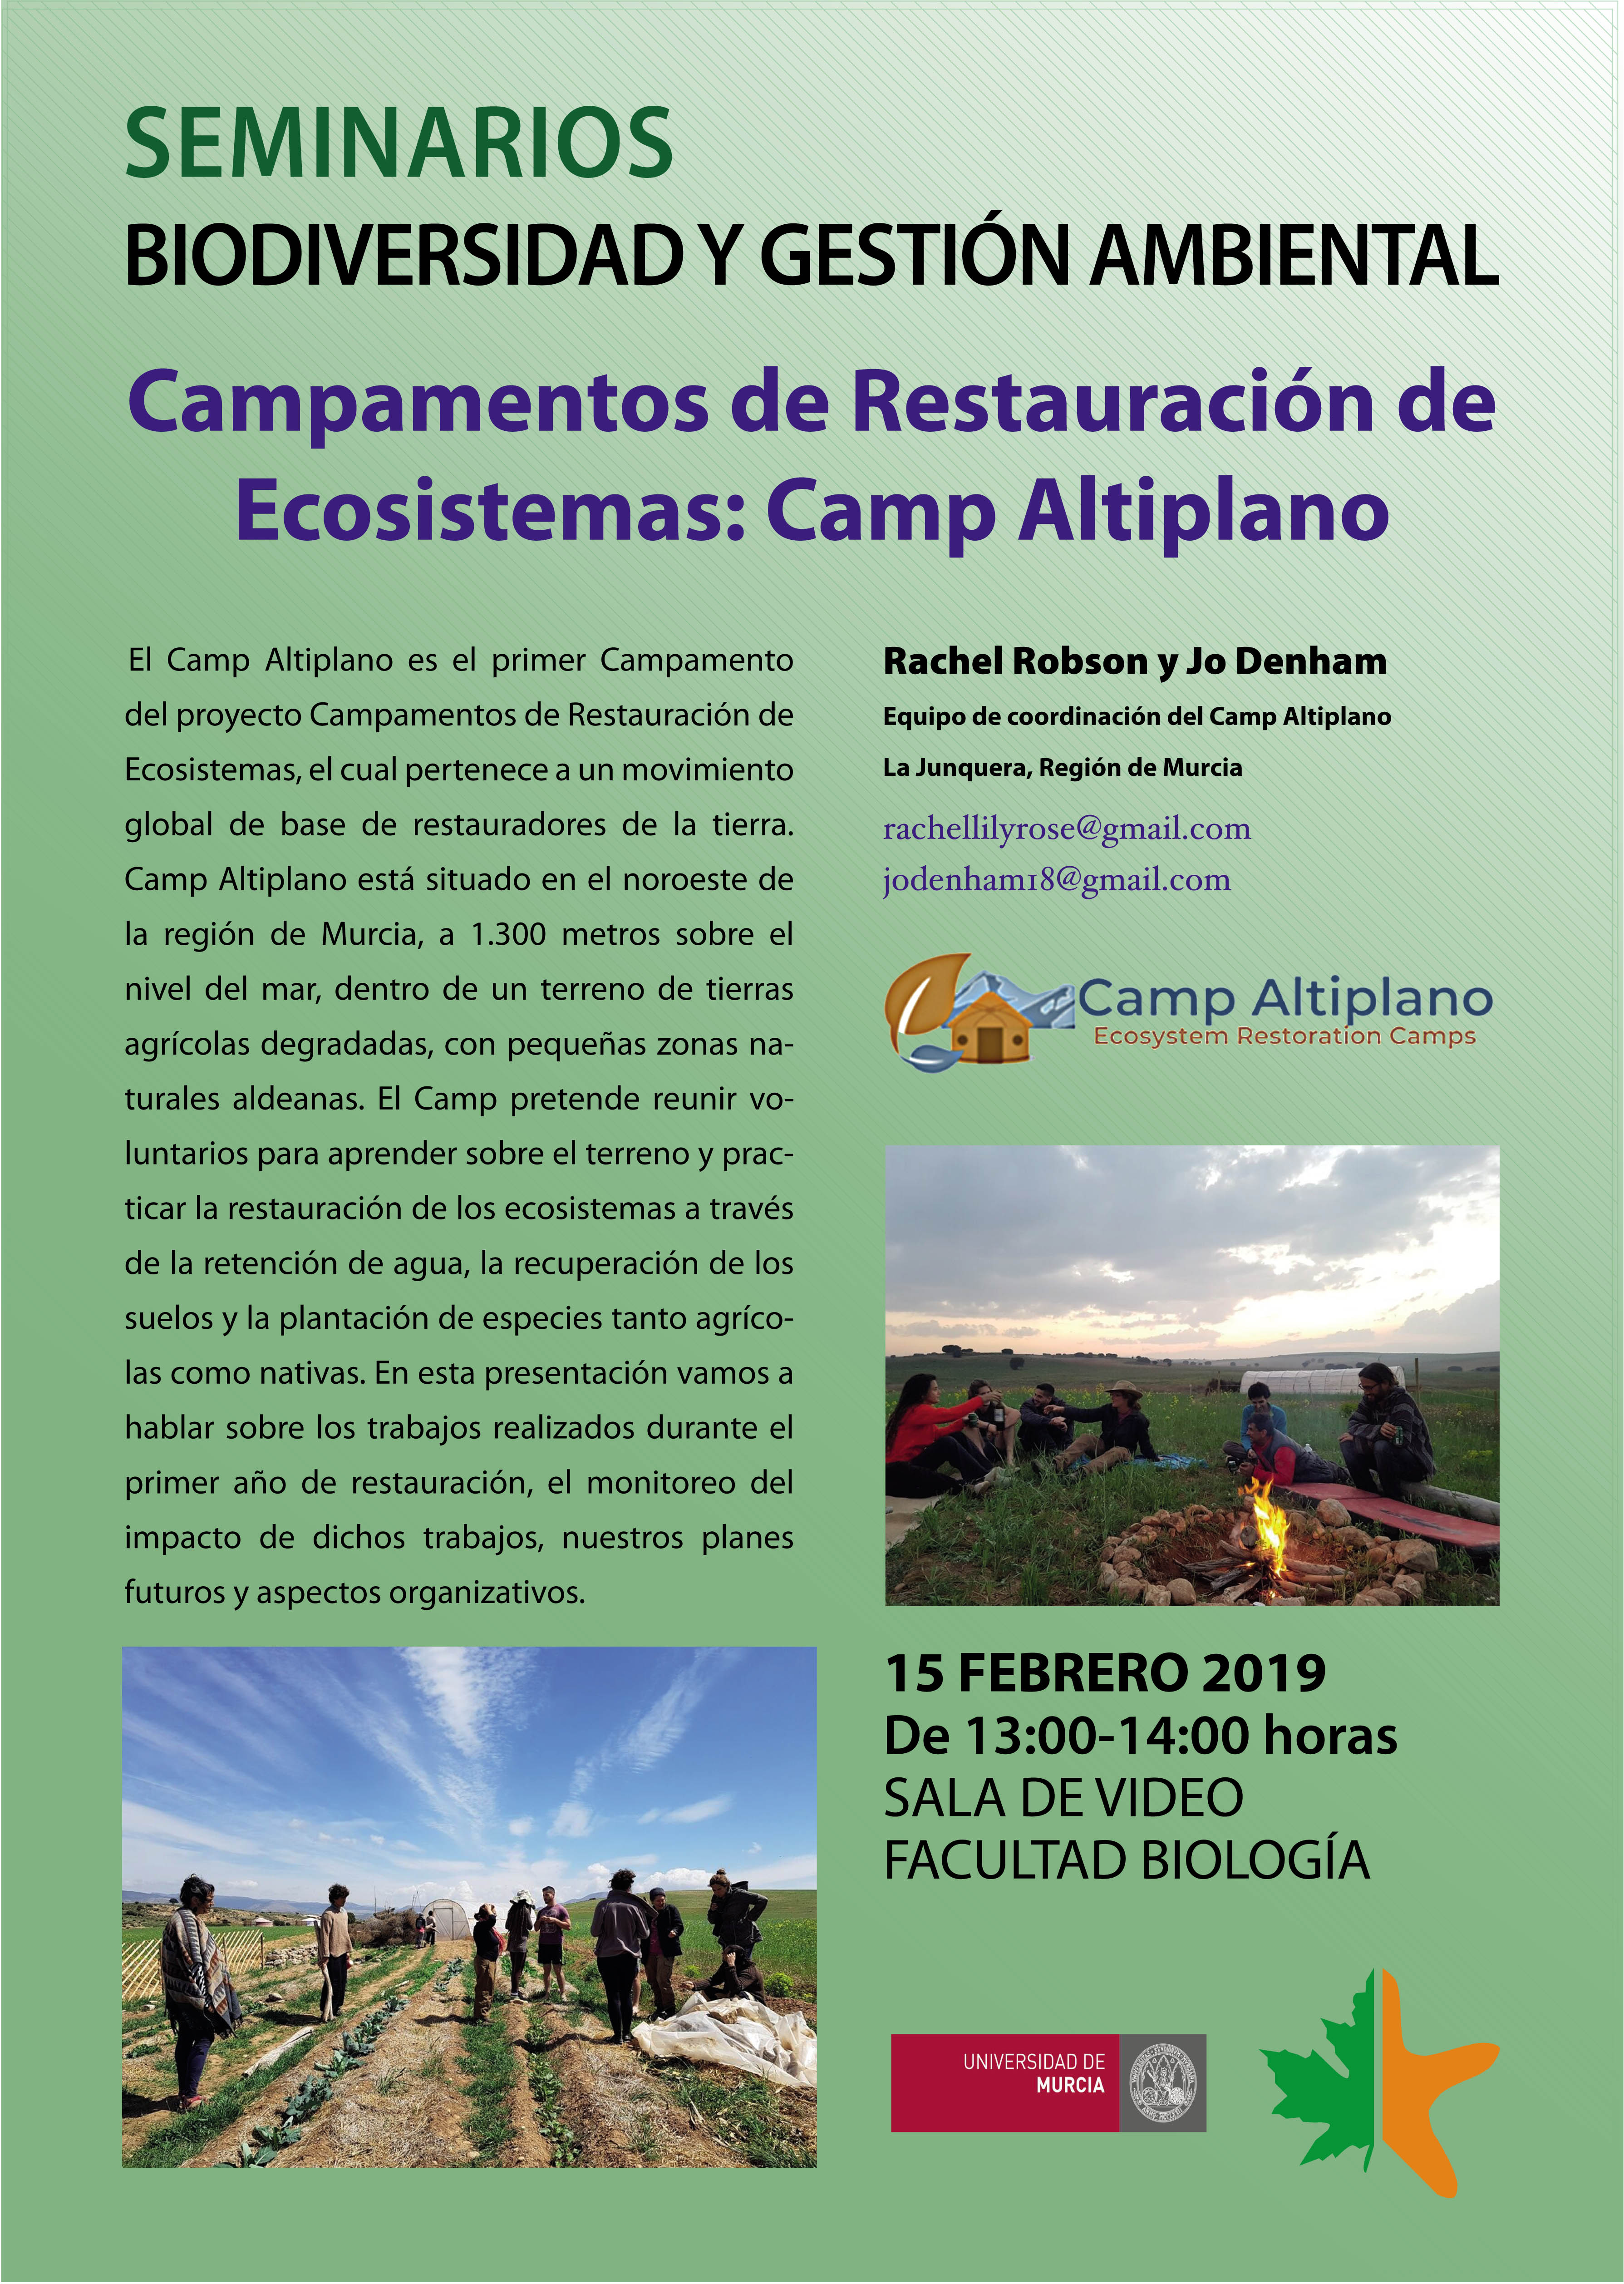 Campamentos de Restauración de Ecosistemas: Camp Altiplano, con los Bioseminarios de la UMU